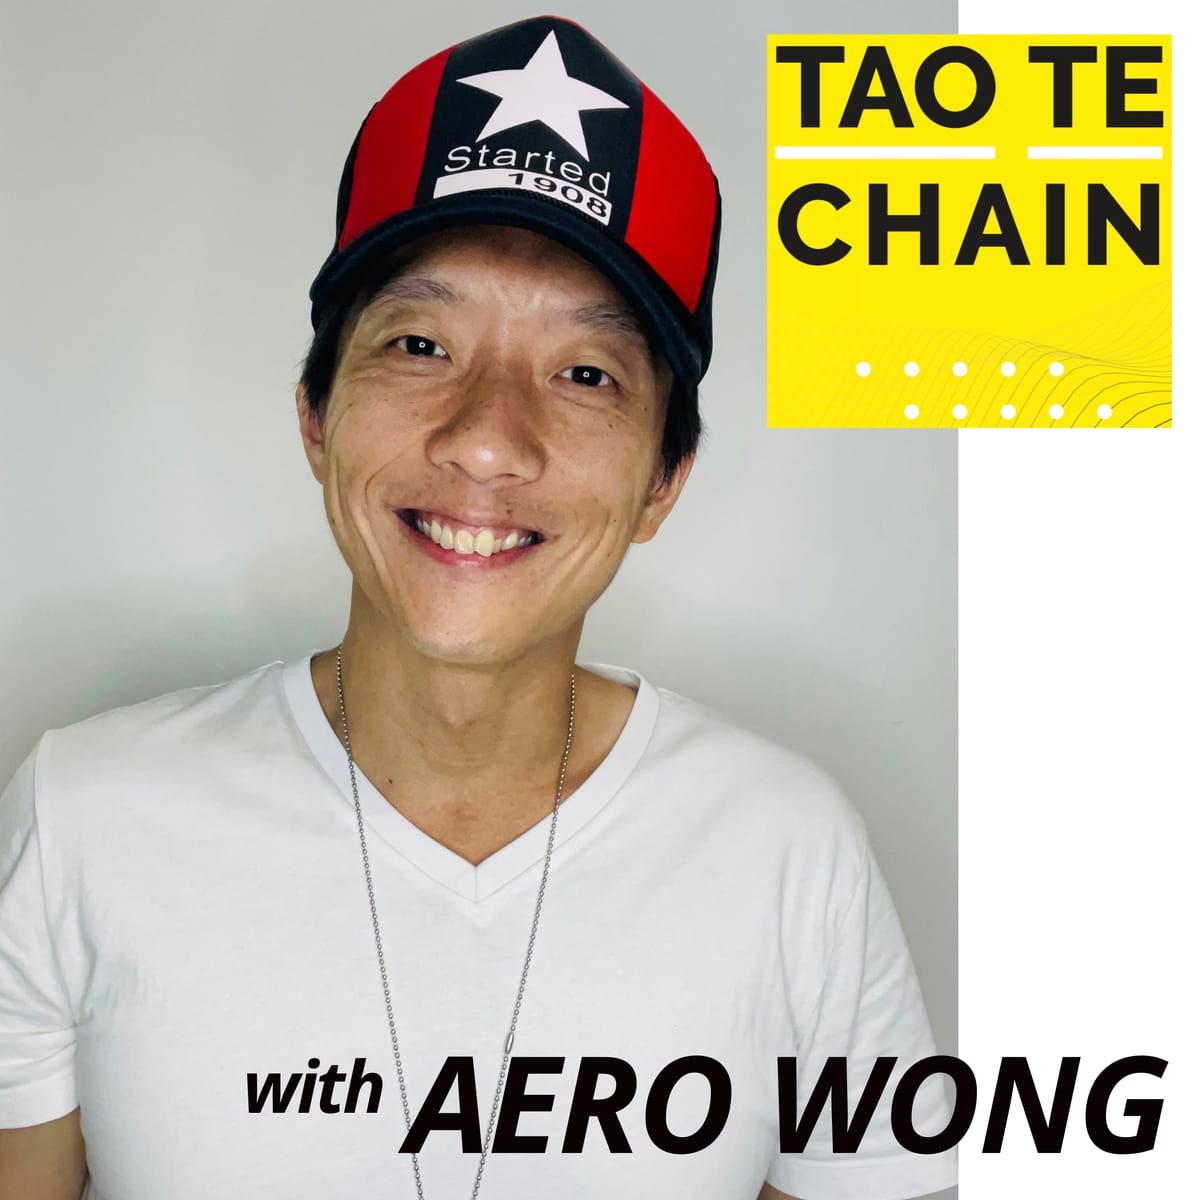 Tao Te Chain